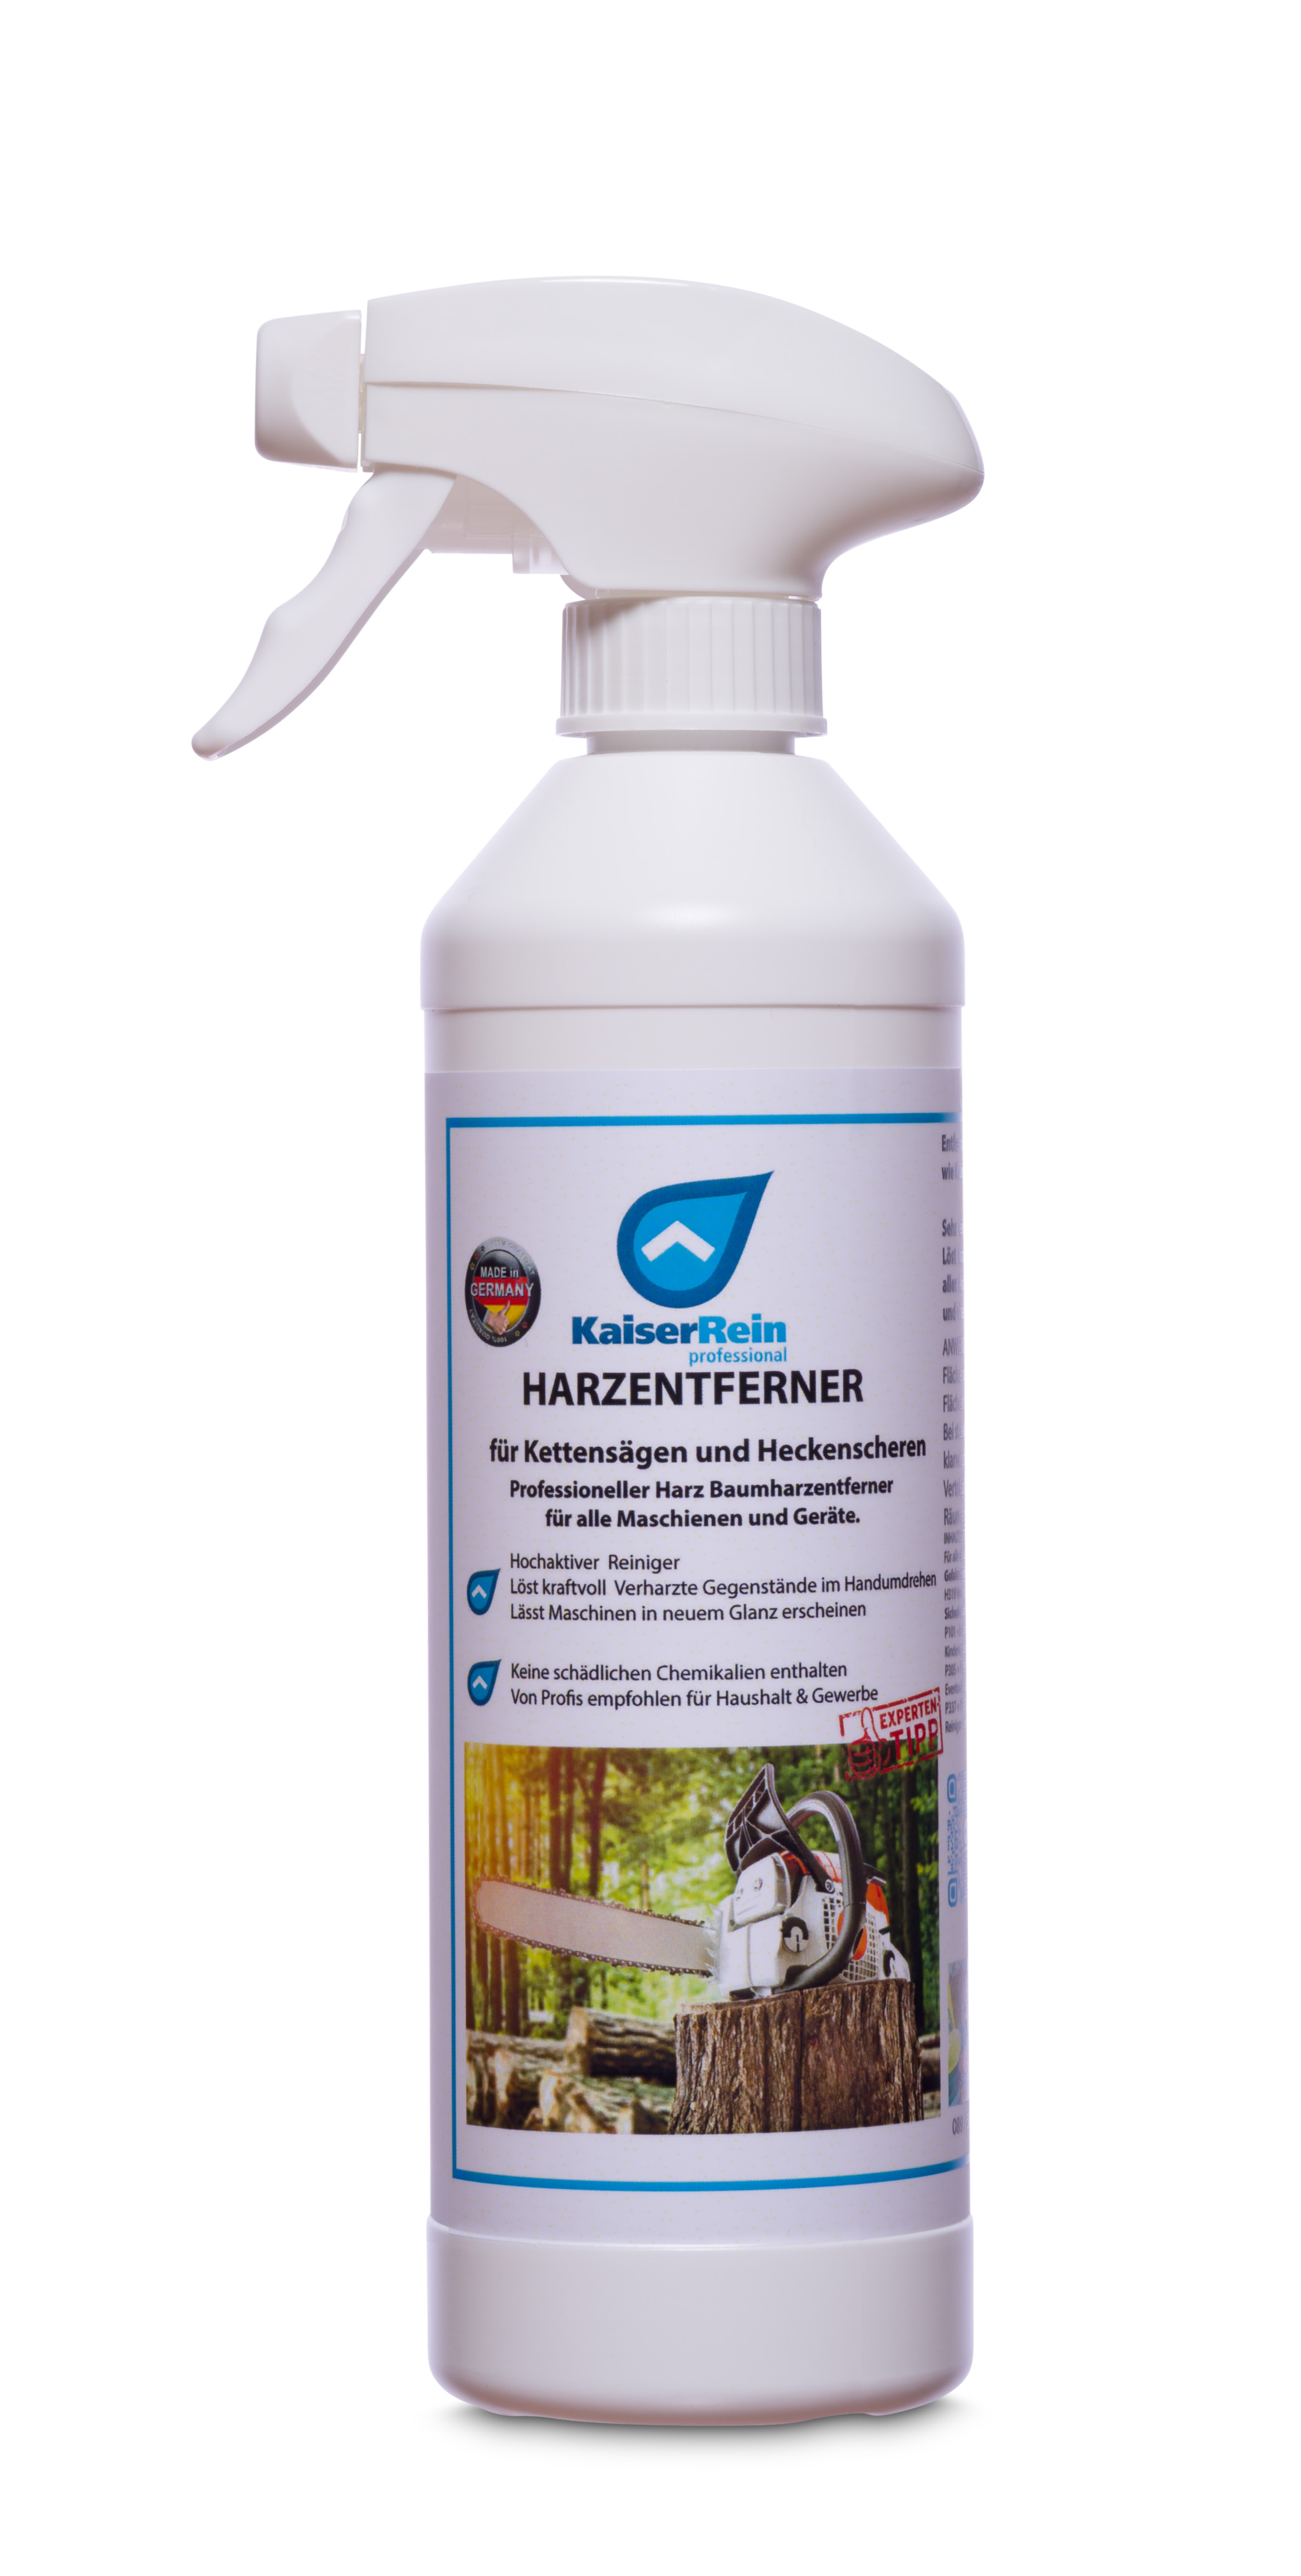 Harzentferner / Baumharzentferner für 0,5 L Spray Kettensägen, Motorsägen, Heckenscheren & Maschinen